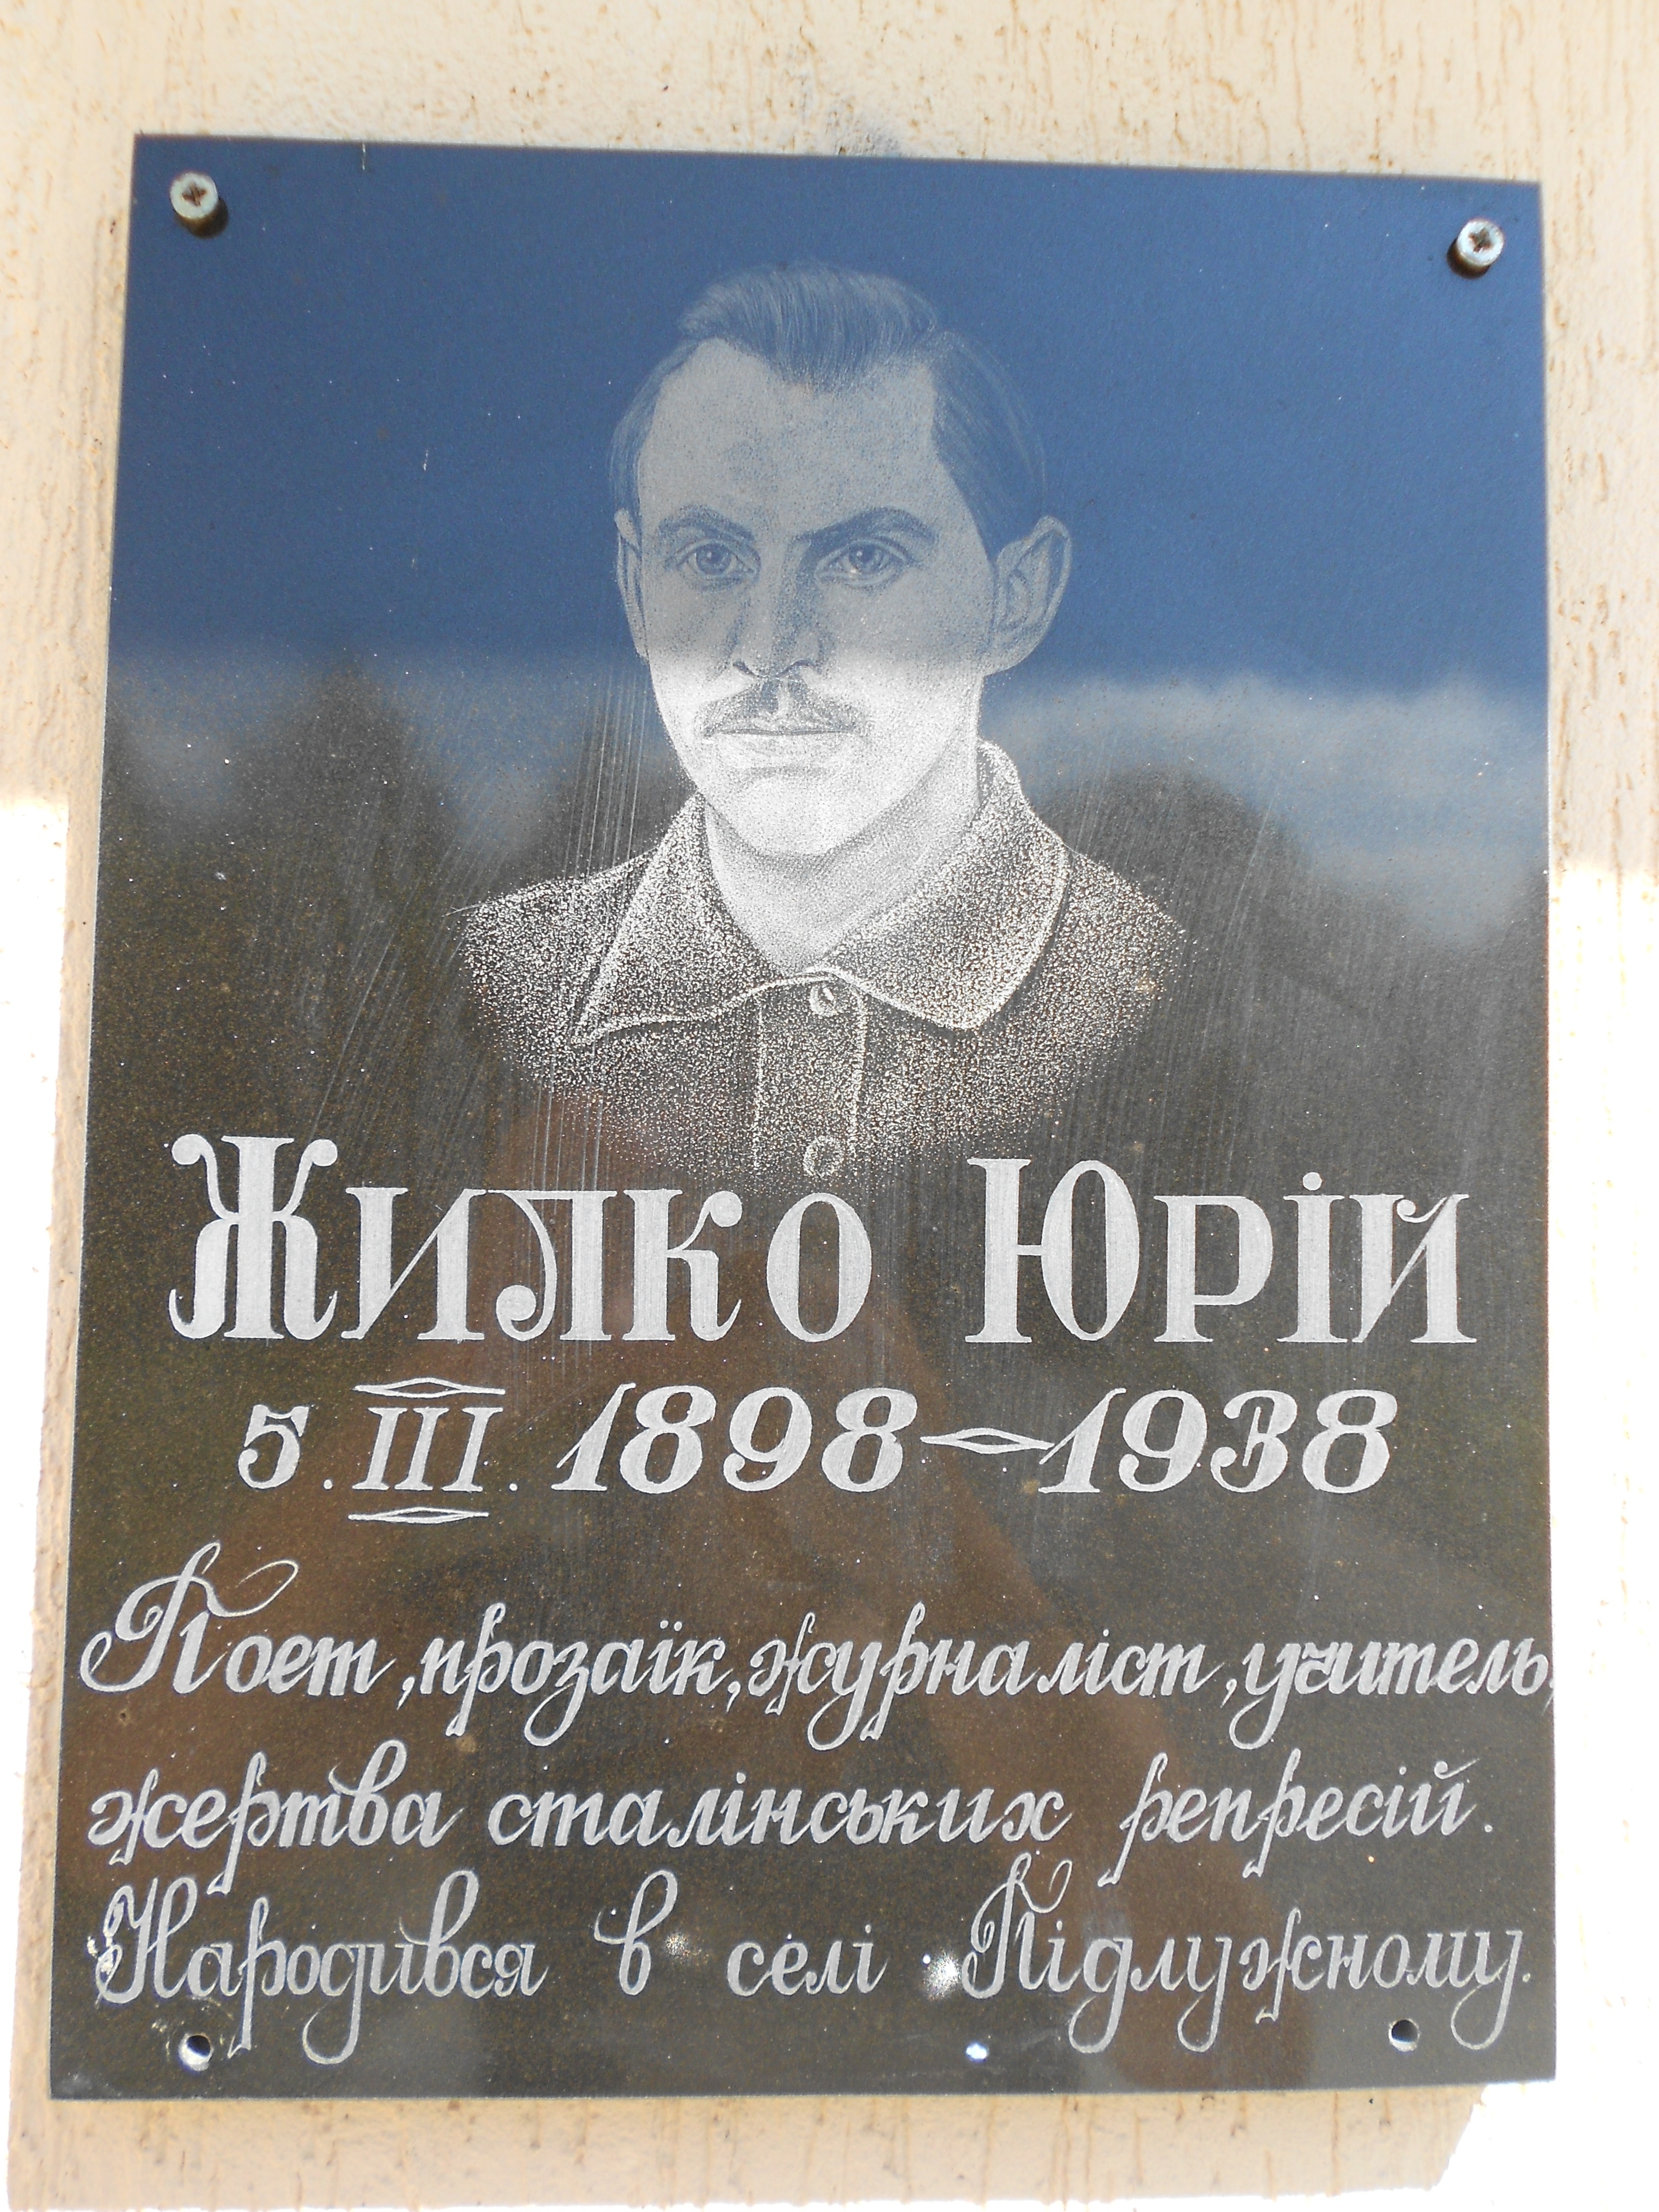 Меморіальна дошка Ю.Жилко встановлена на приміщенні Великолюбаської ЗОШ з нагоди 110-річчя з дня народження поета